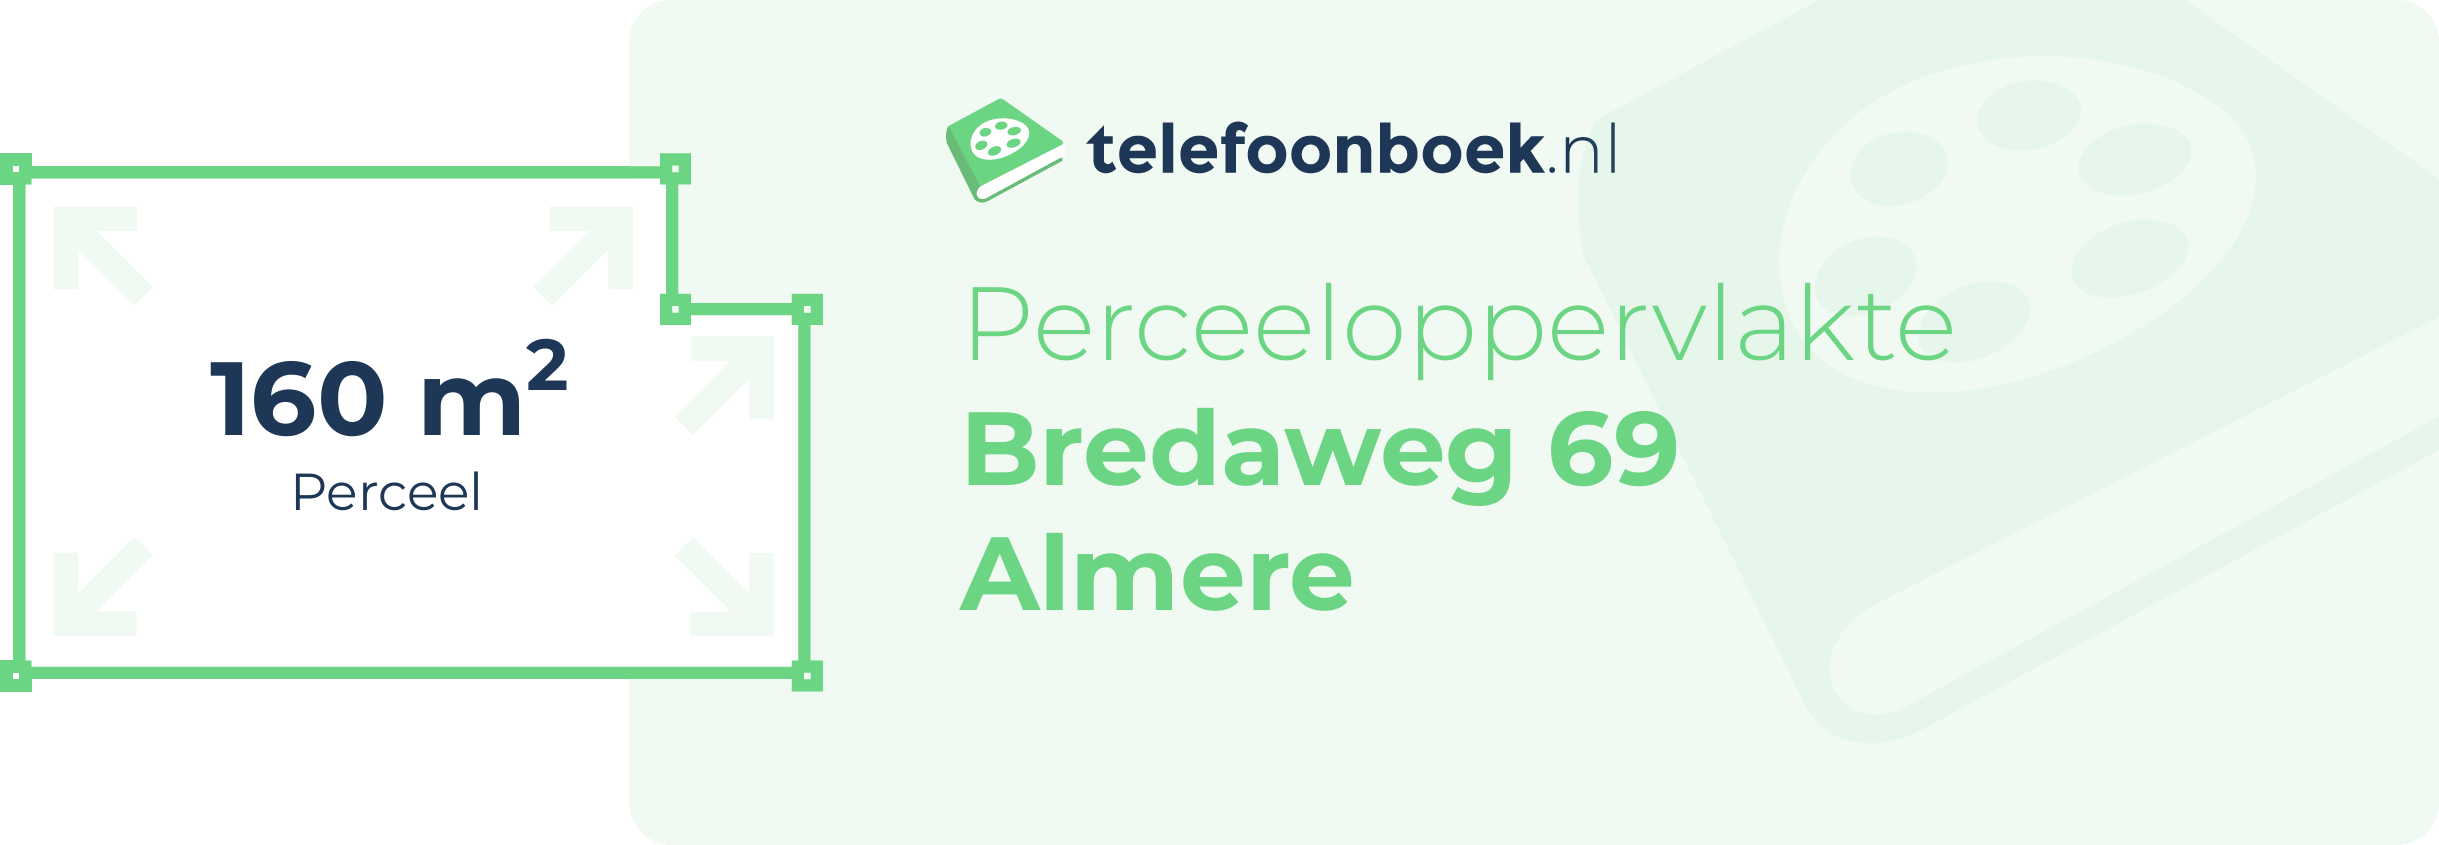 Perceeloppervlakte Bredaweg 69 Almere